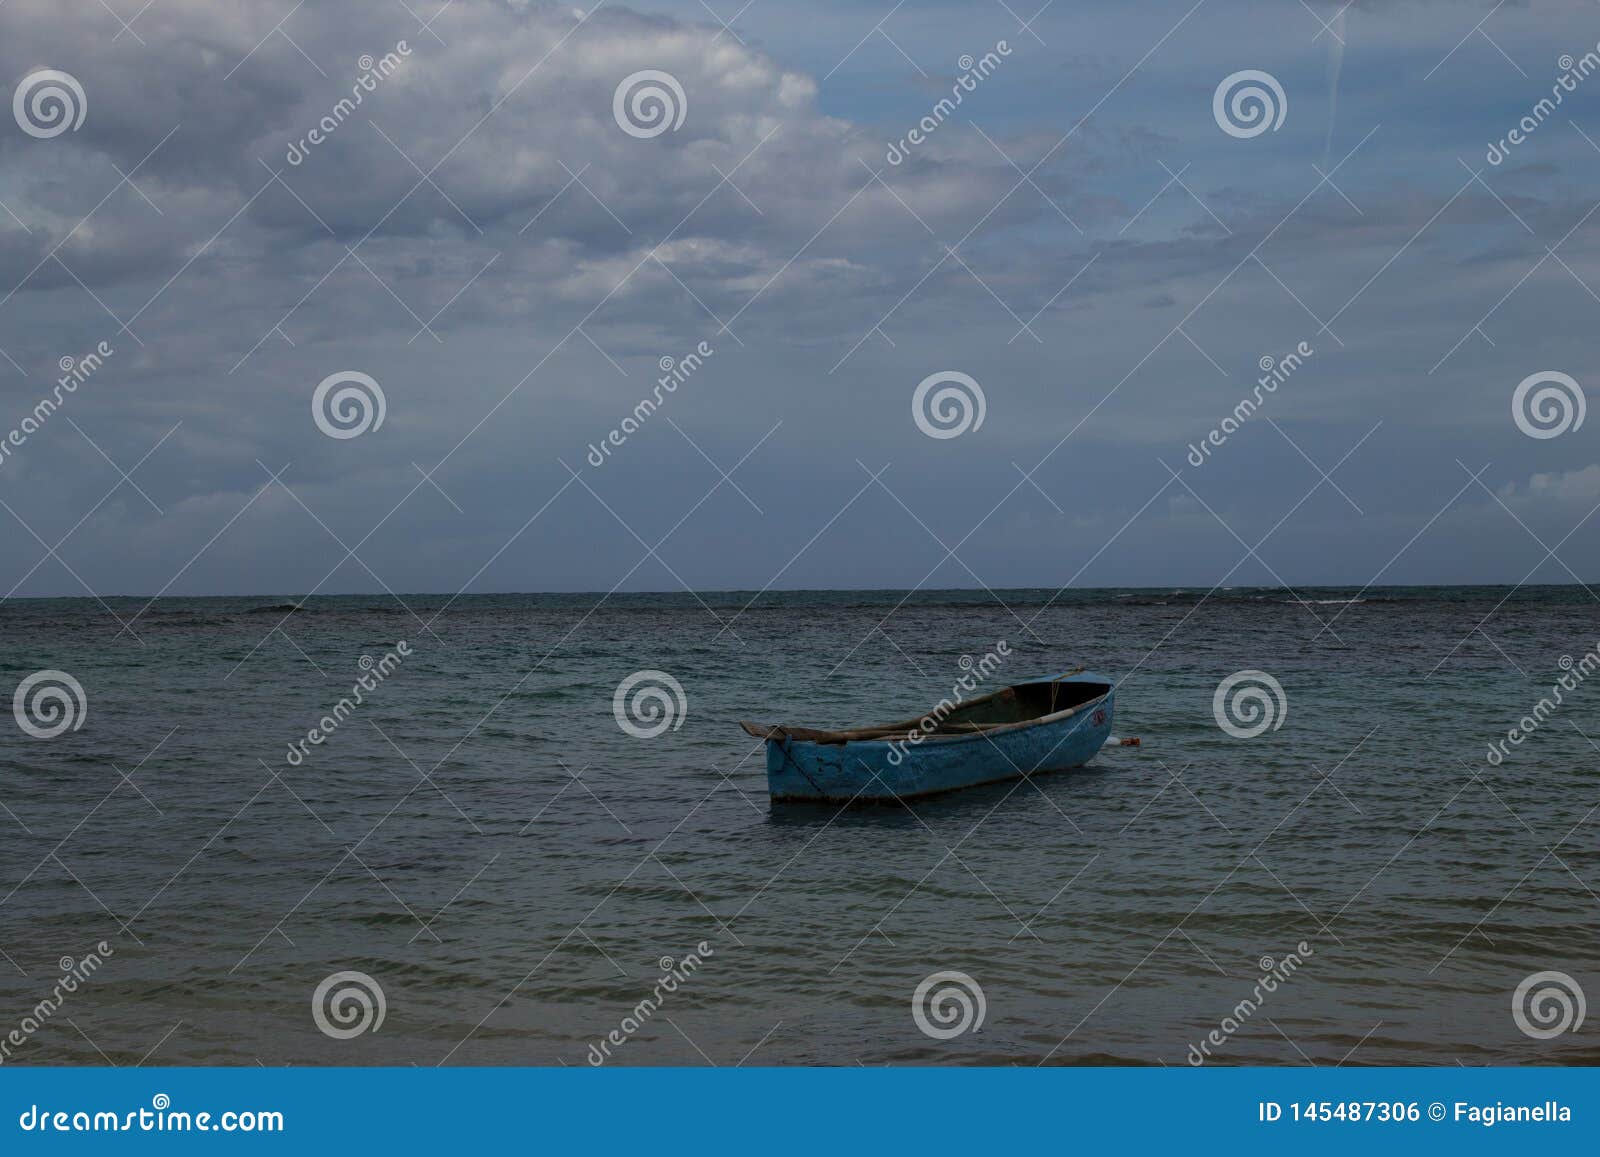 a lonely boat in the sea in playa ballenas, las terrenas, dominican republic